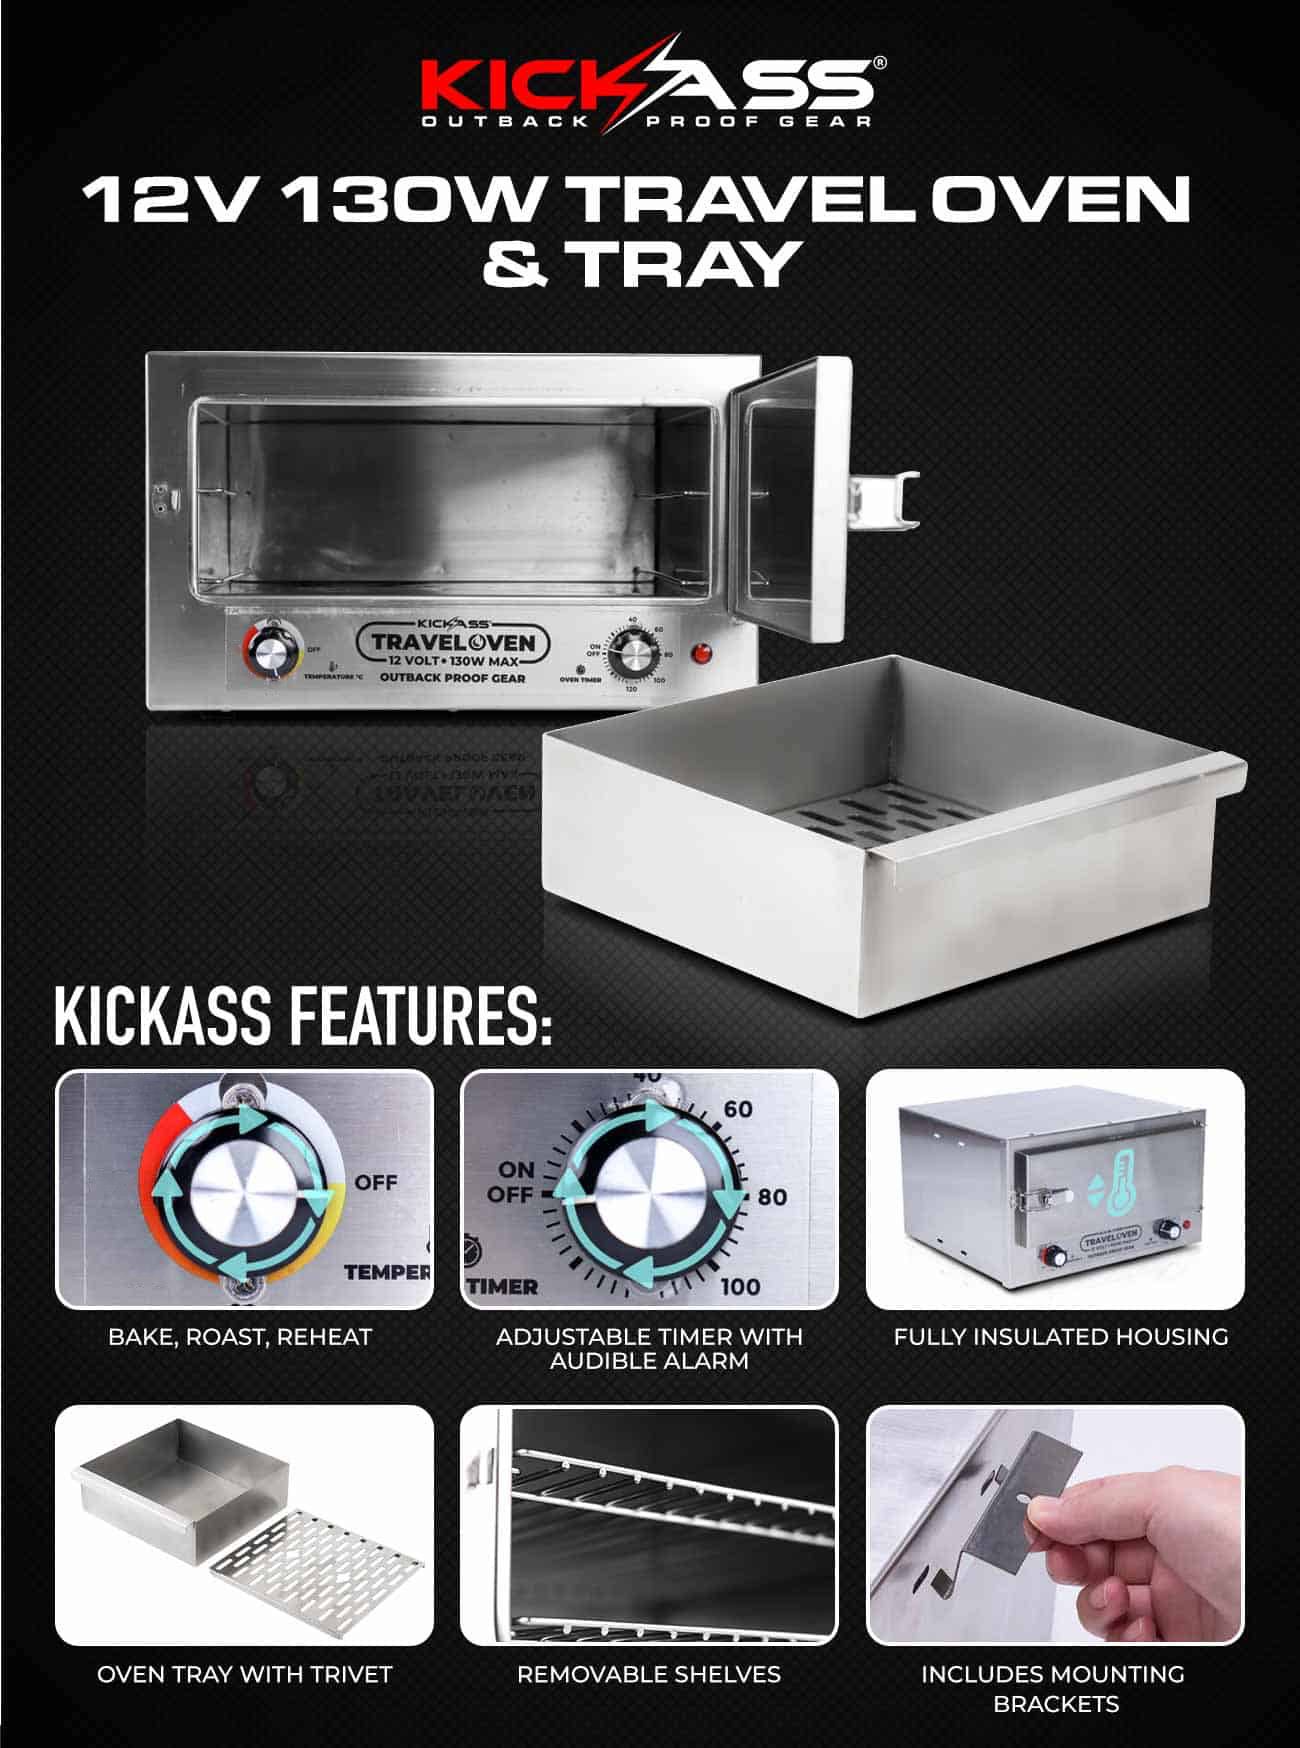 KATRAVELO12KIT - KickAss Travel Oven & Tray with Trivet